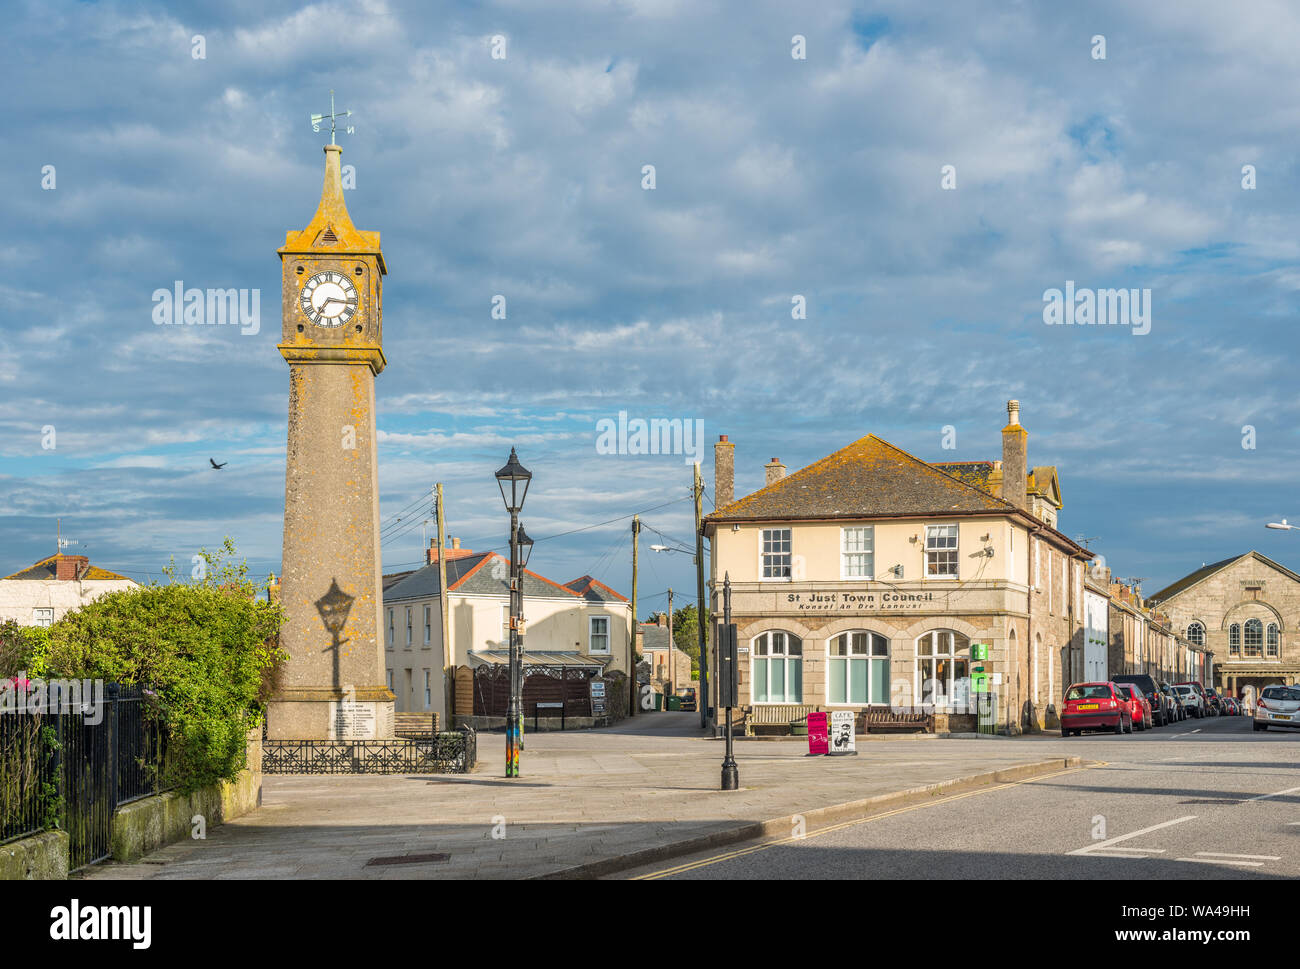 St. Just ist eine Gemeinde im District Penwith der Grafschaft Cornwall, England, Vereinigtes Königreich. Stockfoto